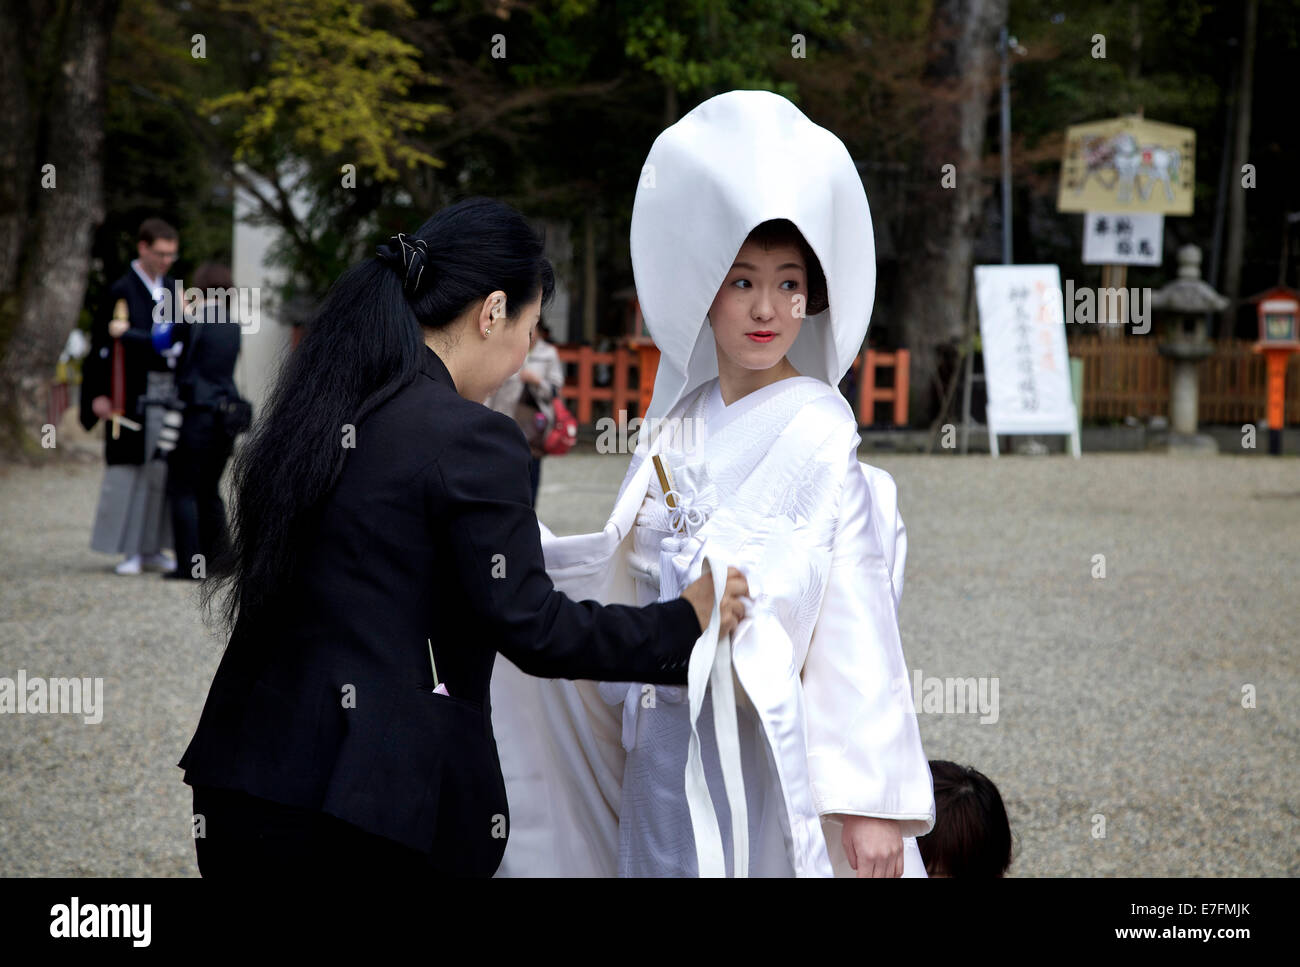 Braut, Bräutigam, traditionelle japanische Jäten Zeremonie, Mann, Frau. Kyoto, Japan, Asien Stockfoto